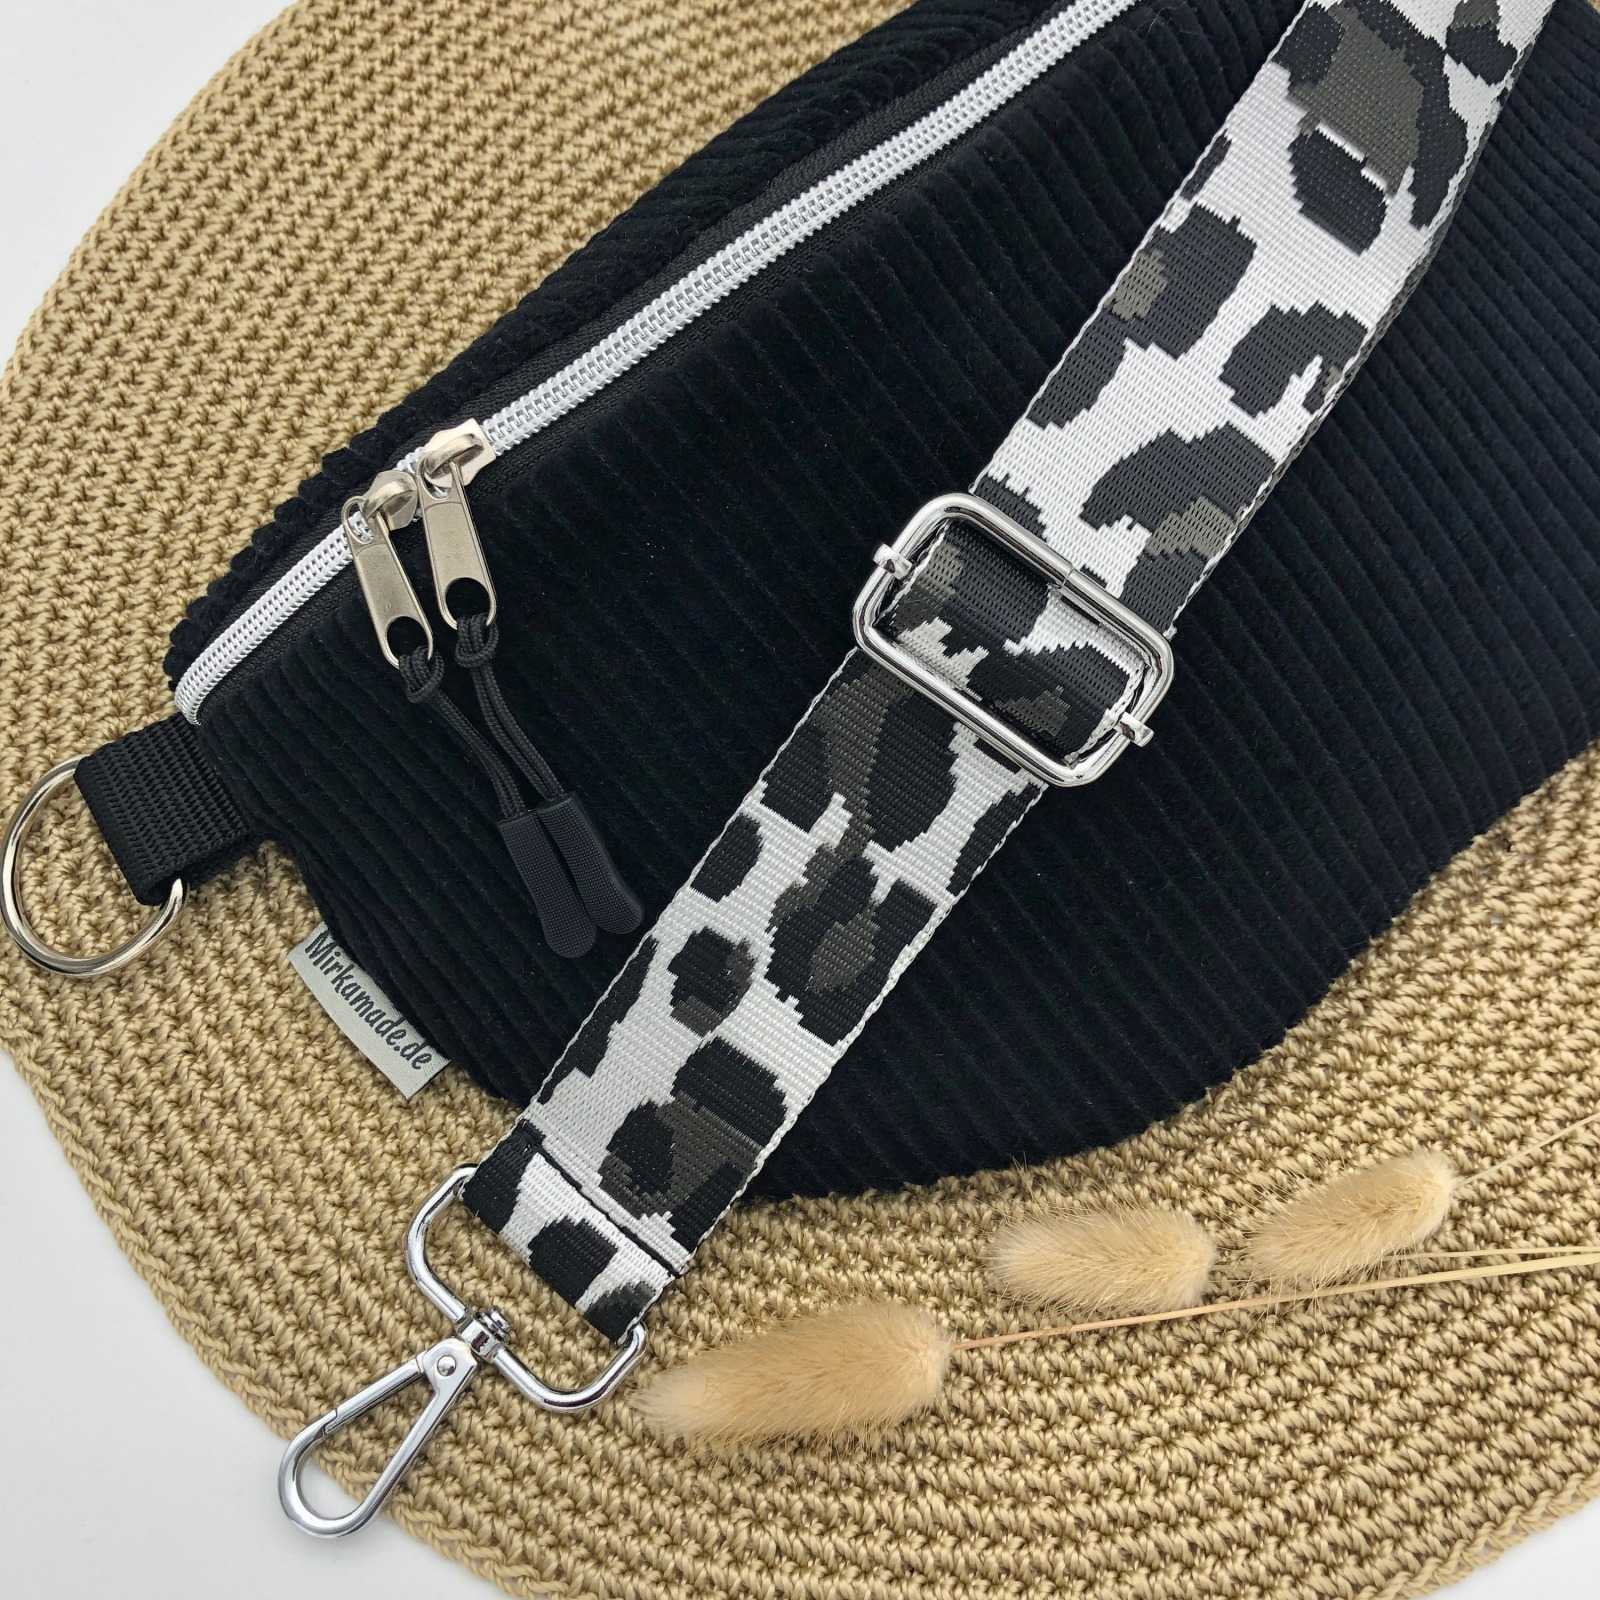 Bauchtasche Crossbag Cord schwarz mit Taschengurt Leo schwarz/weiß Hipbag leicht und praktisch Kord